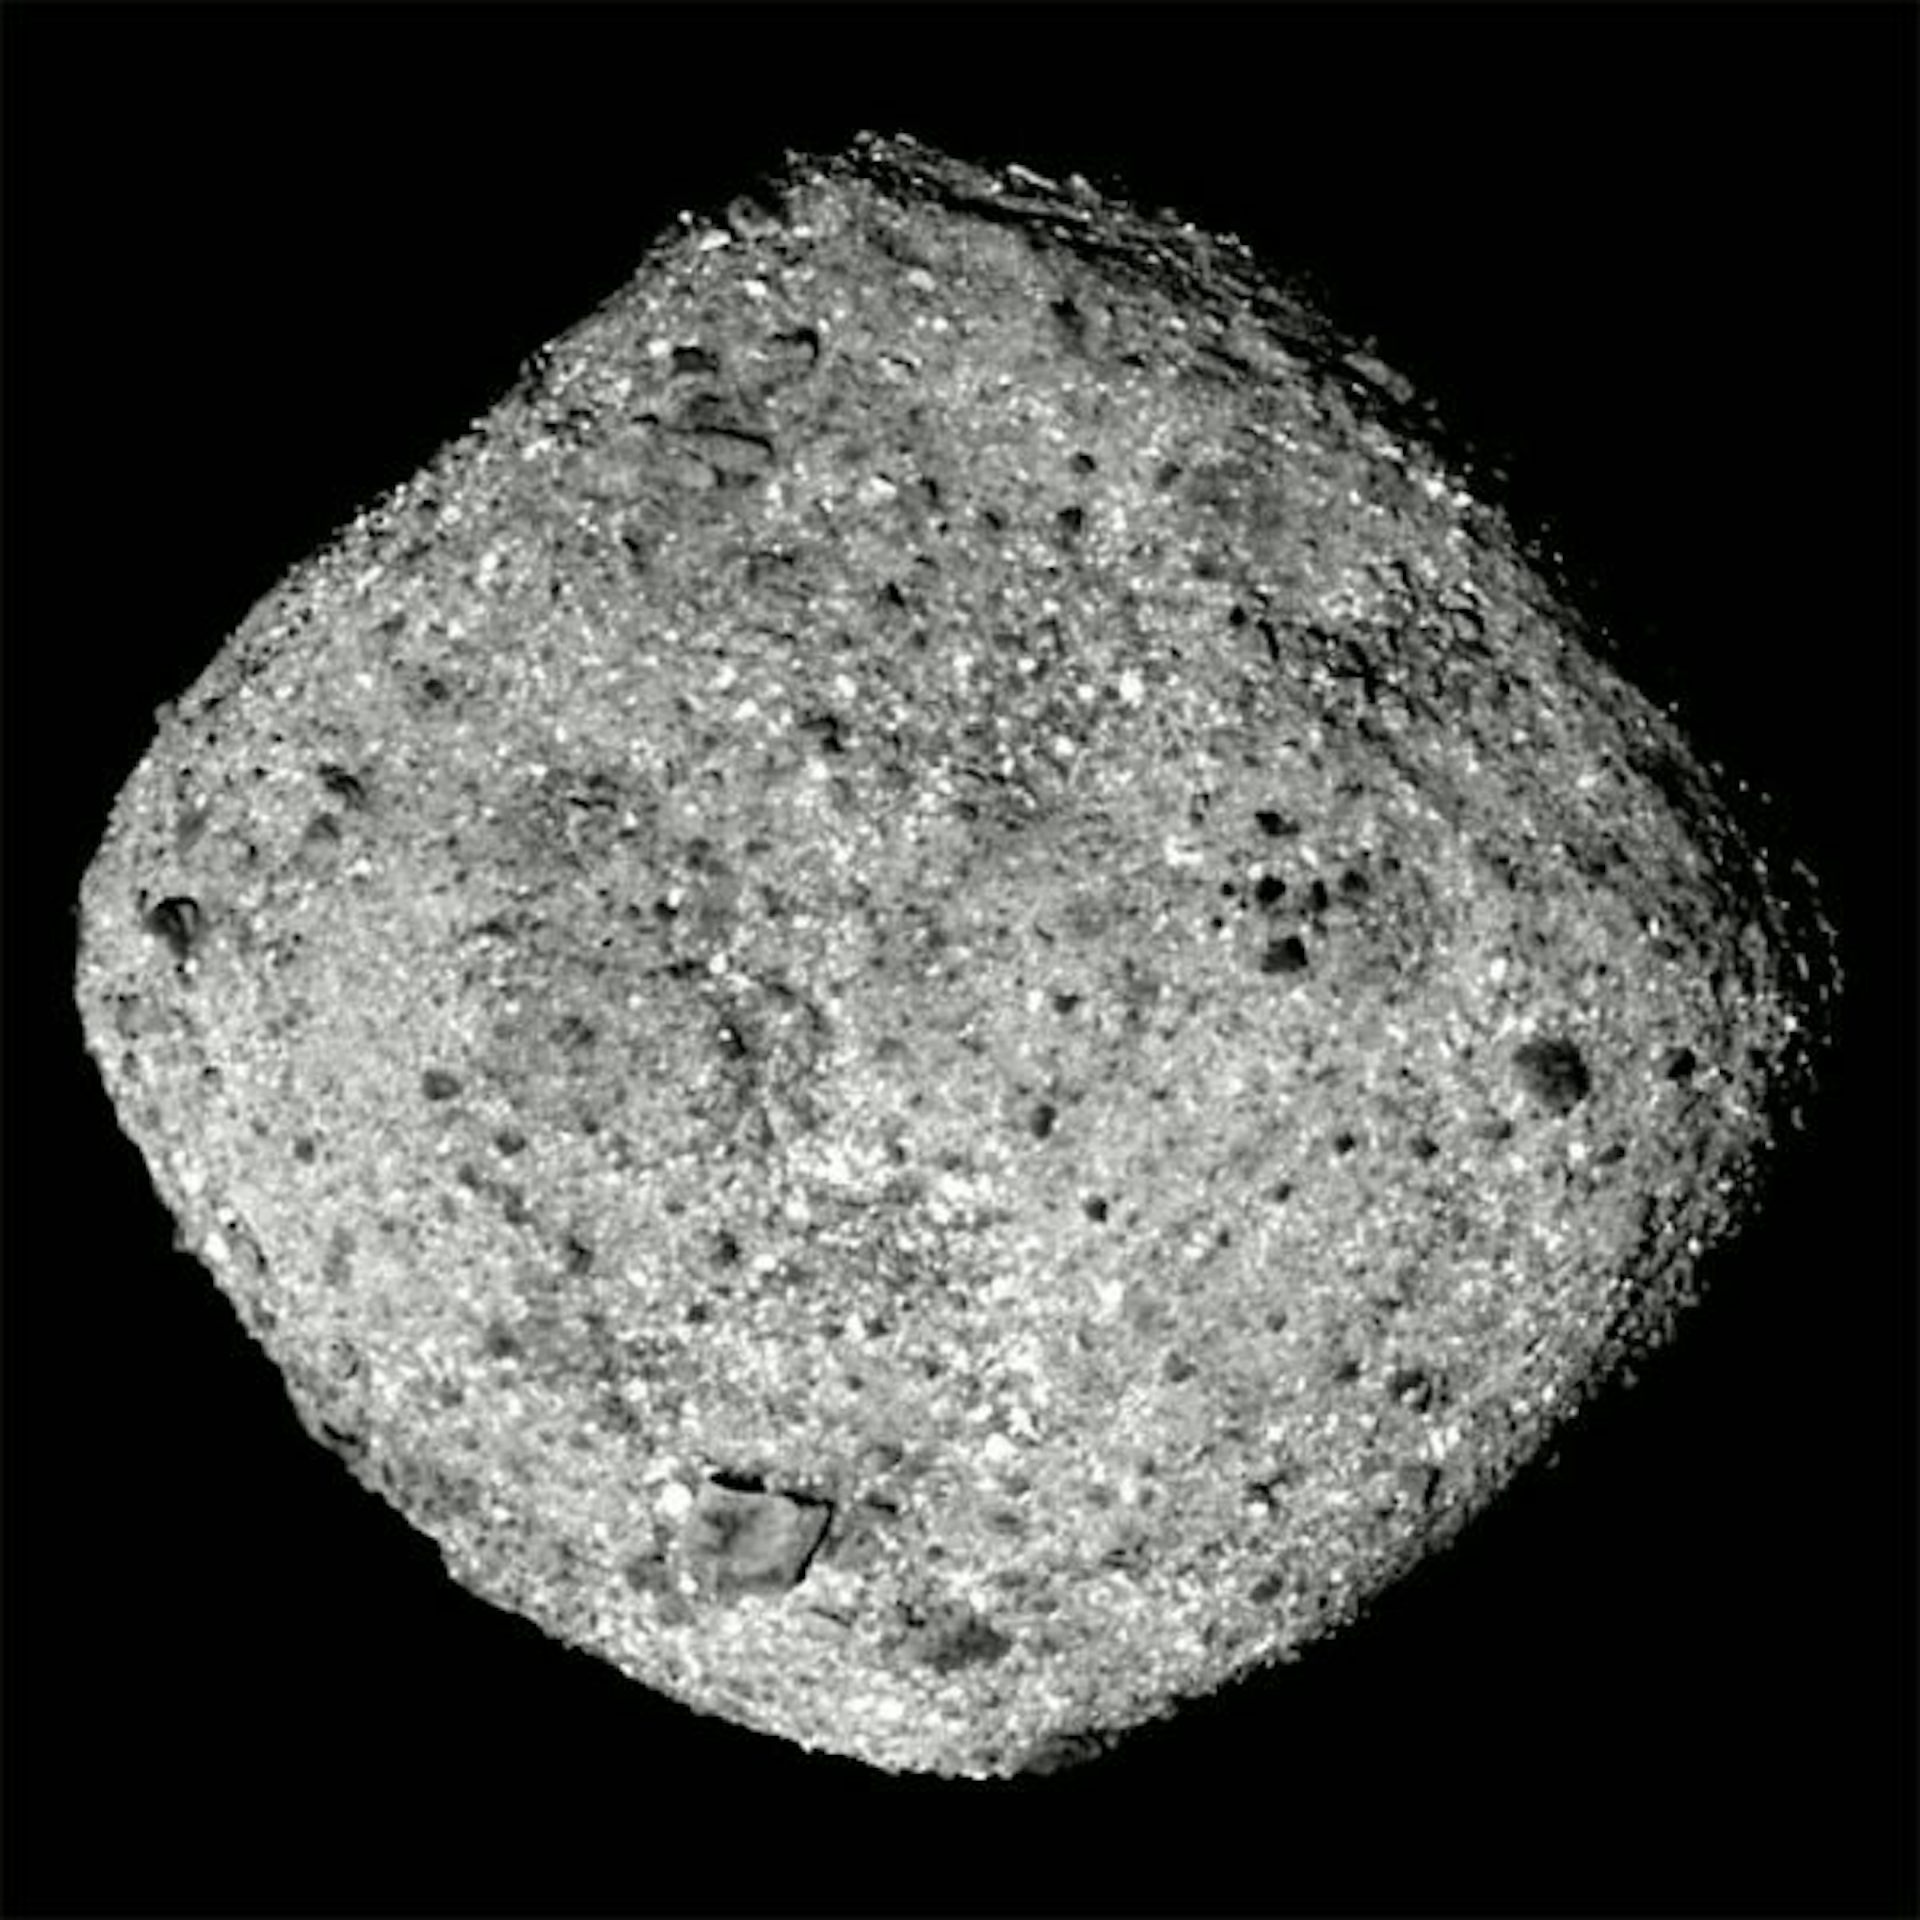 Asteroide Bennu, um sobrevivente da crosta de um mundo oceânico